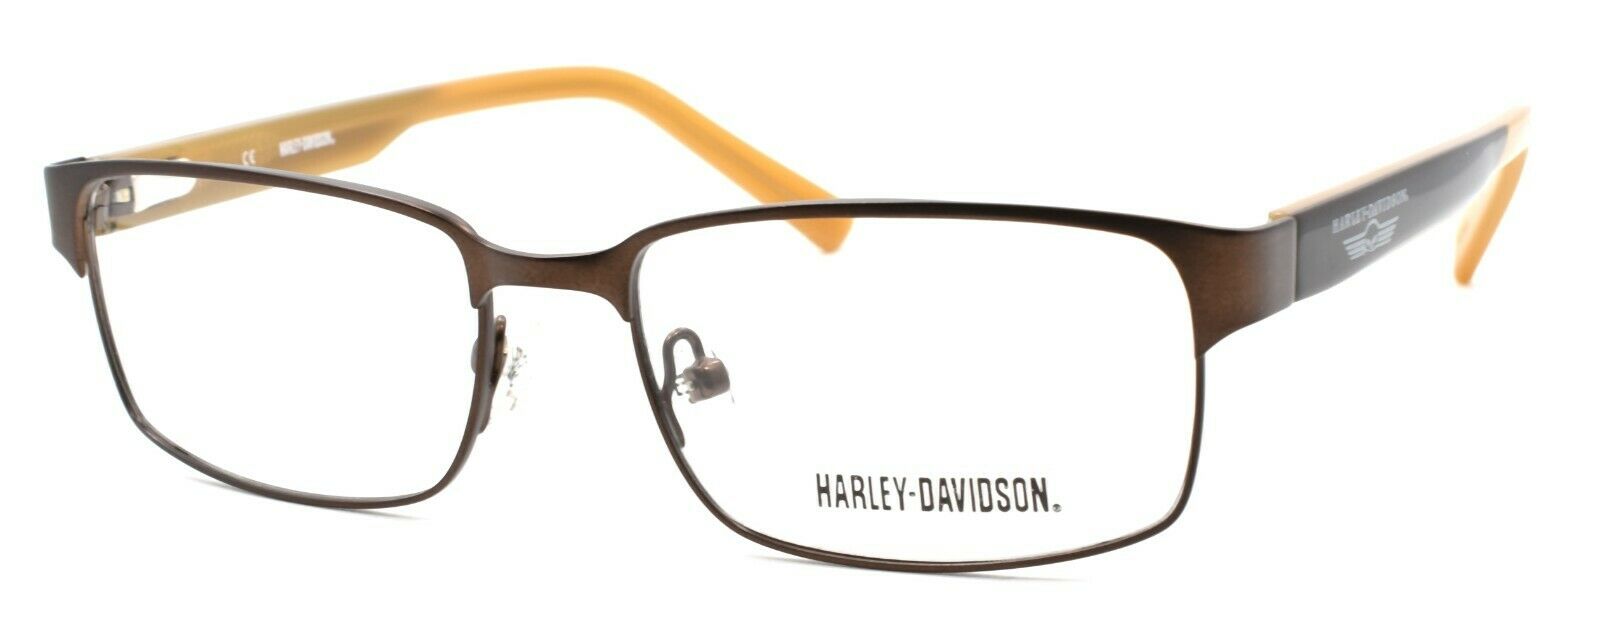 1-Harley Davidson HDT117 BRN Eyeglasses Frames SMALL 49-15-135 Brown + CASE-715583507487-IKSpecs